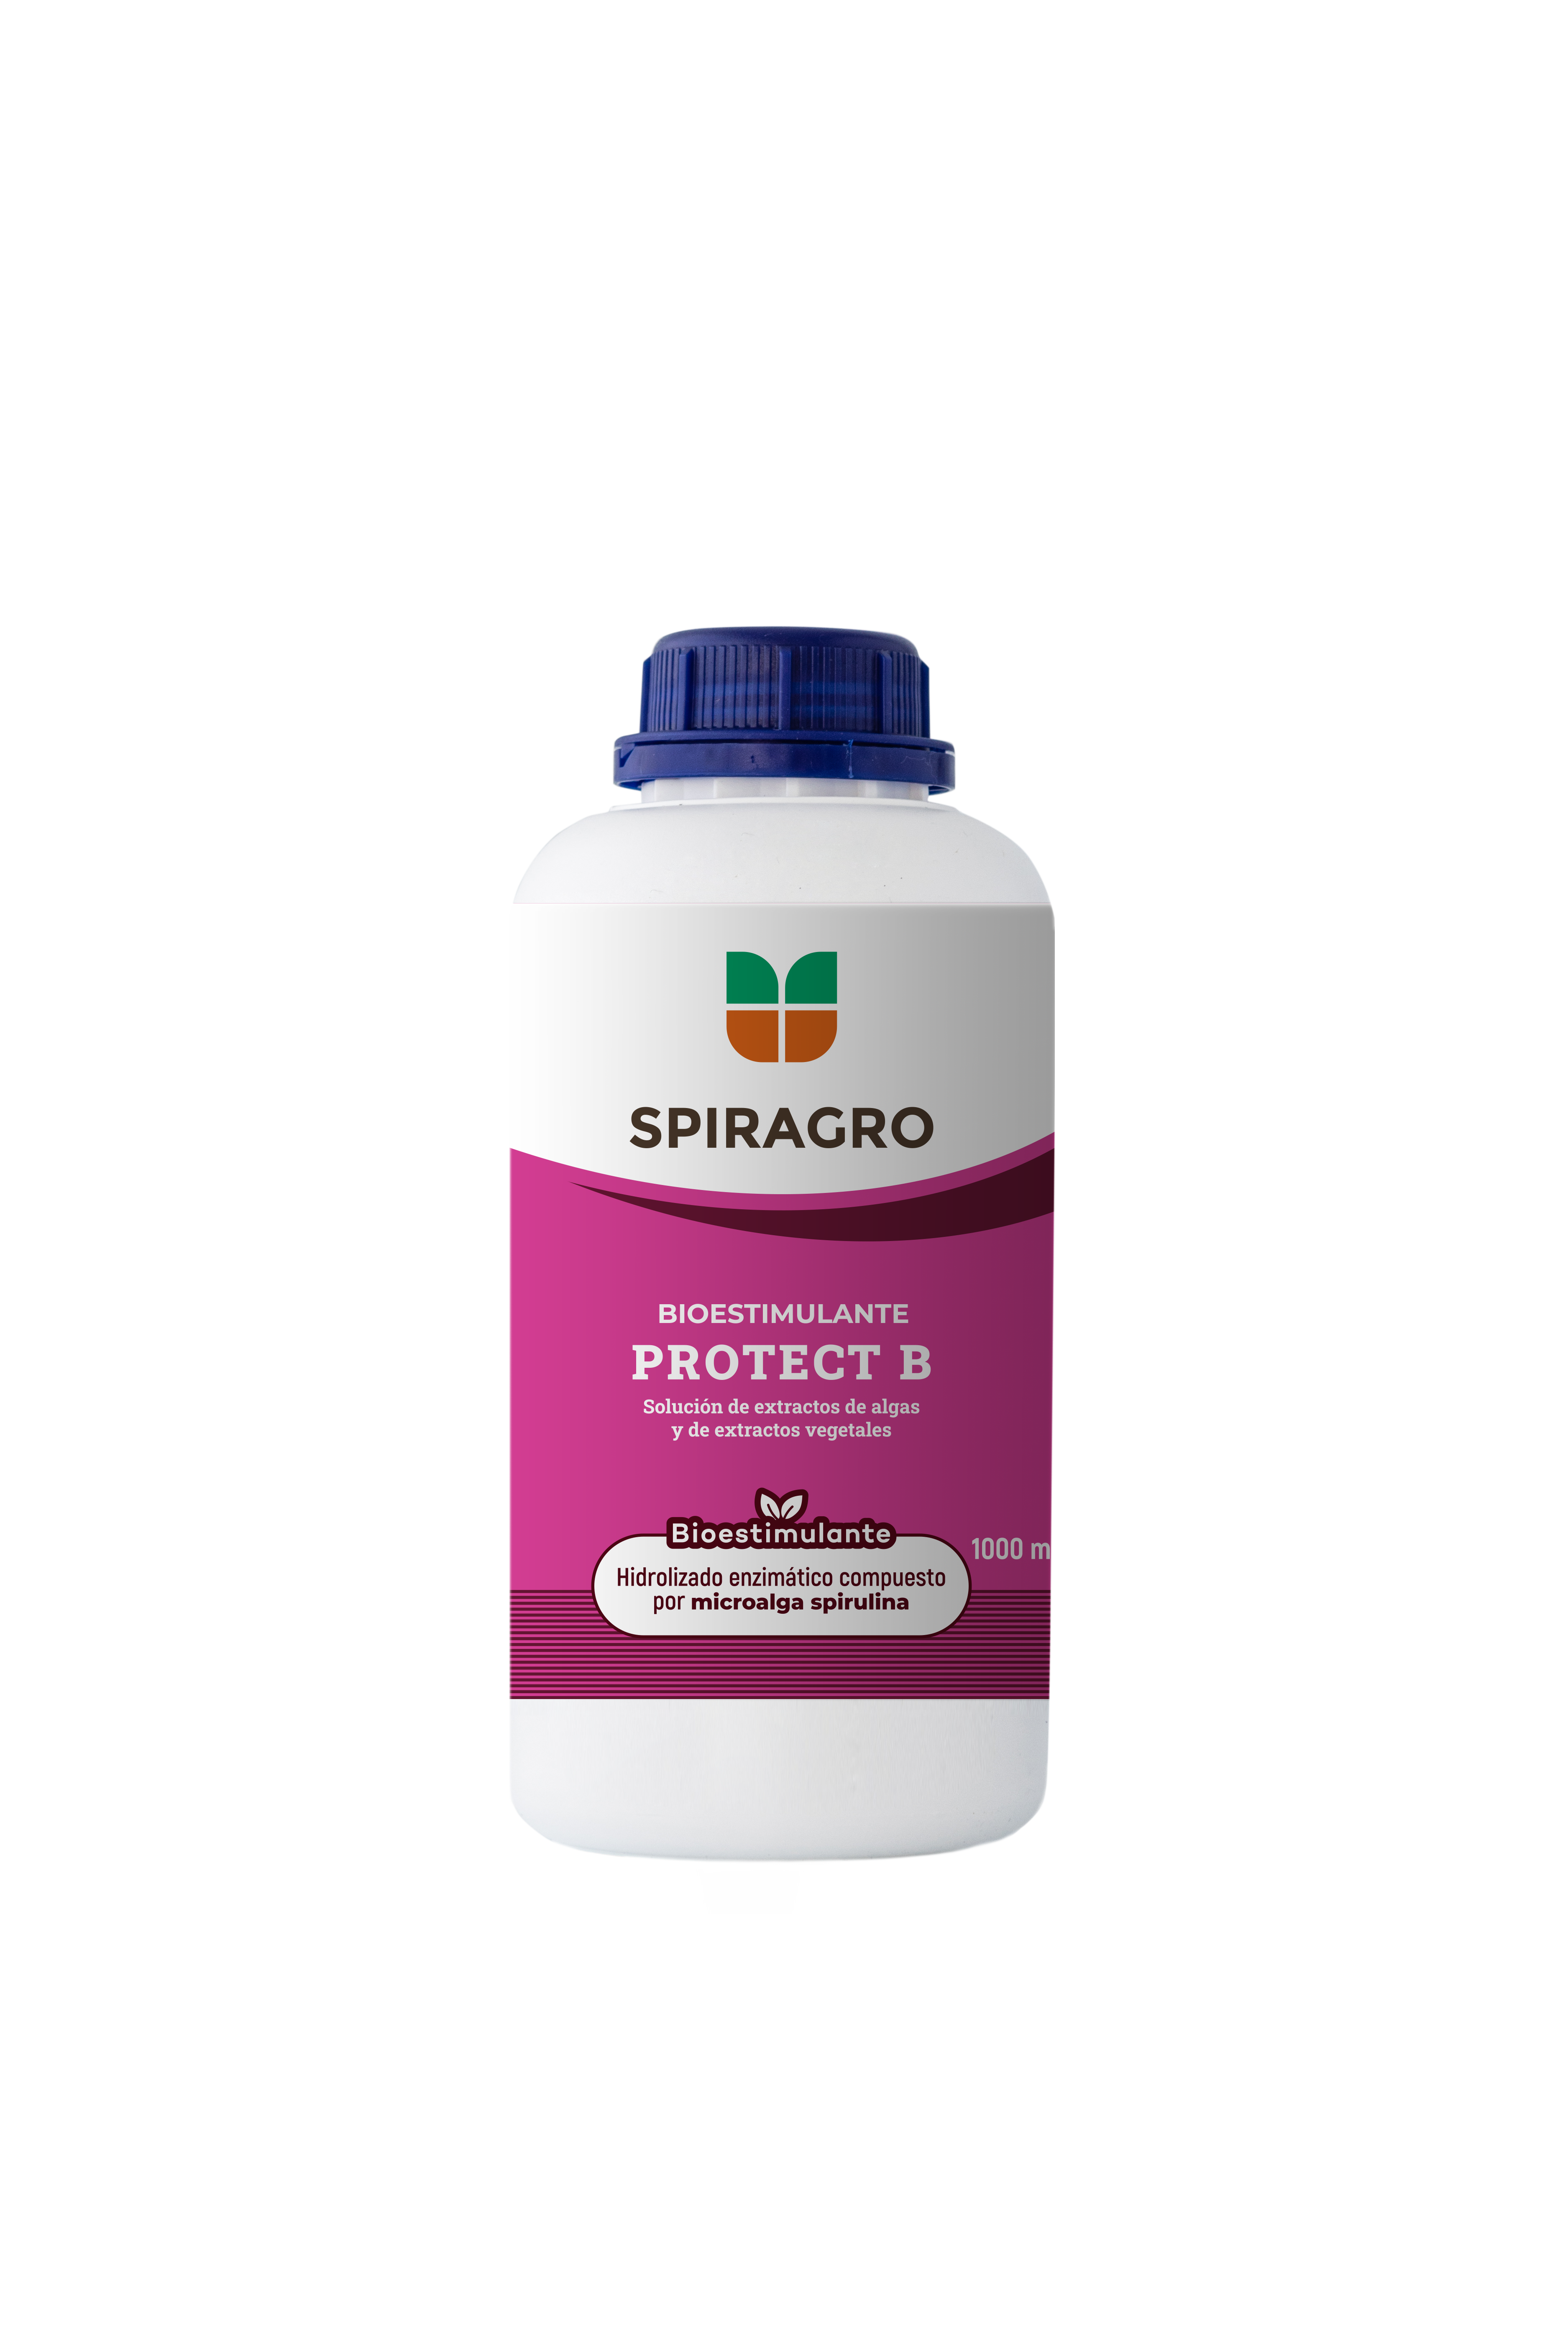 Spiragro Protect B - Bioestimulante con efecto protector